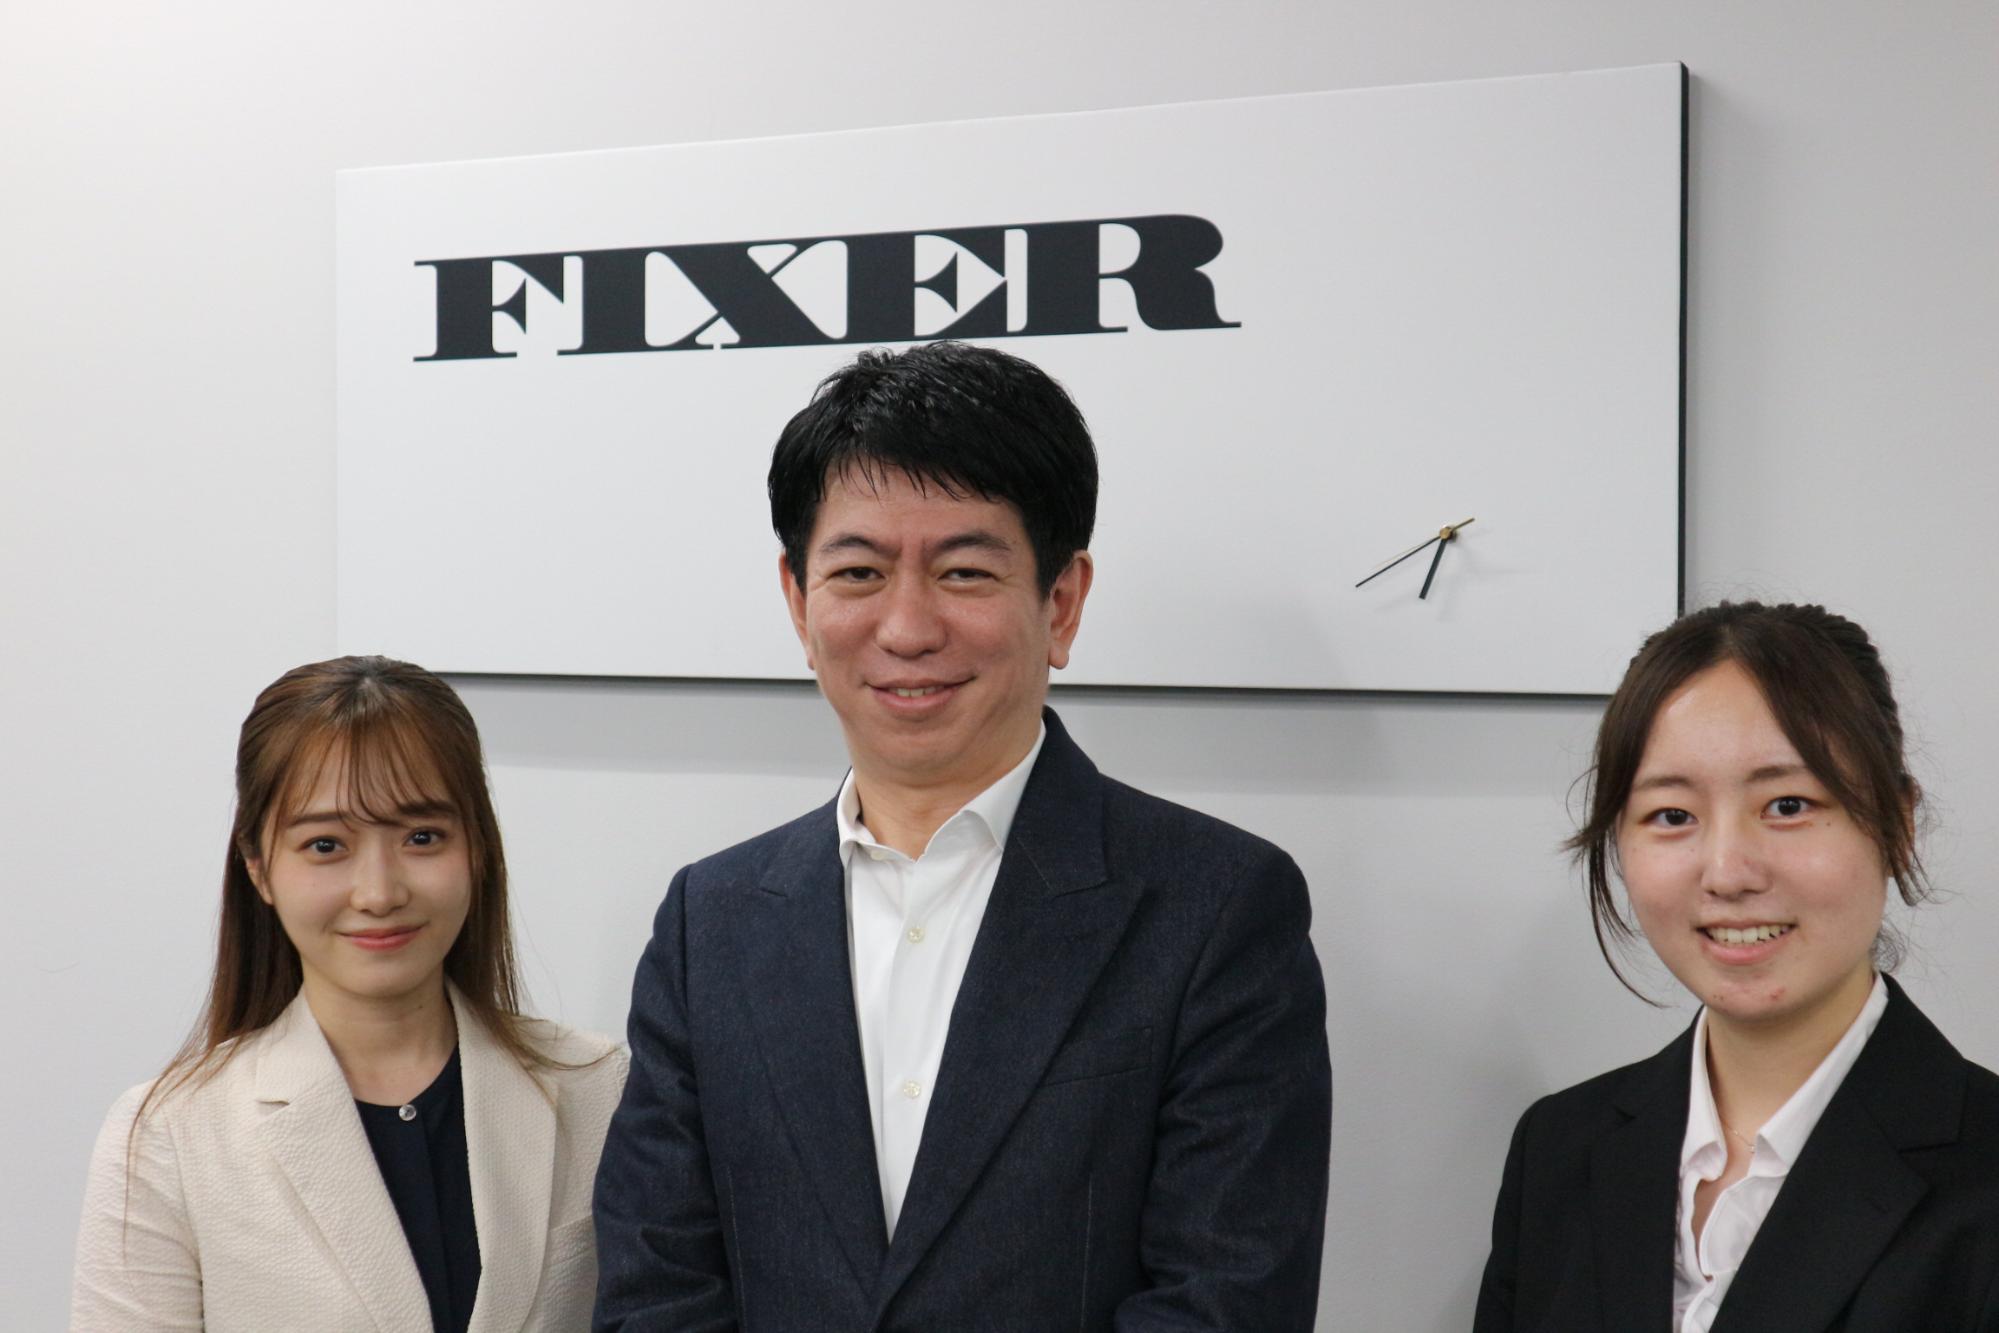 クラウドとAIで未来に挑み続けるFIXERの “Inter-Change” 【株式会社FIXER様 Diamond Partner インタビュー】